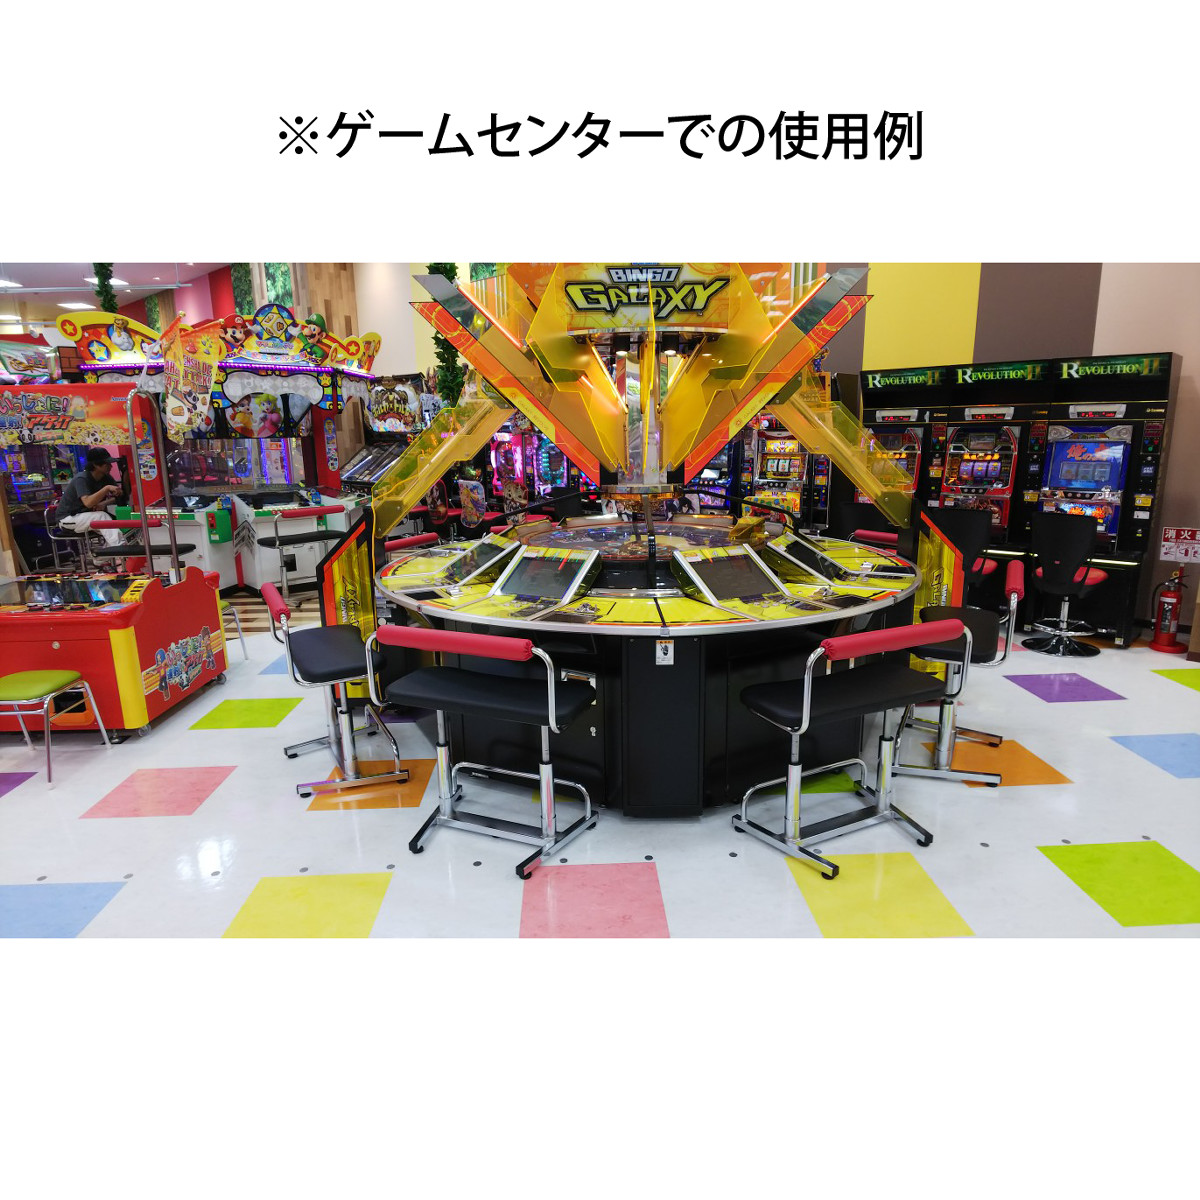 【ゲームセンター椅子】 アーケードゲーム機用 背もたれ付昇降式ペアベンチ【TB2-18WM】